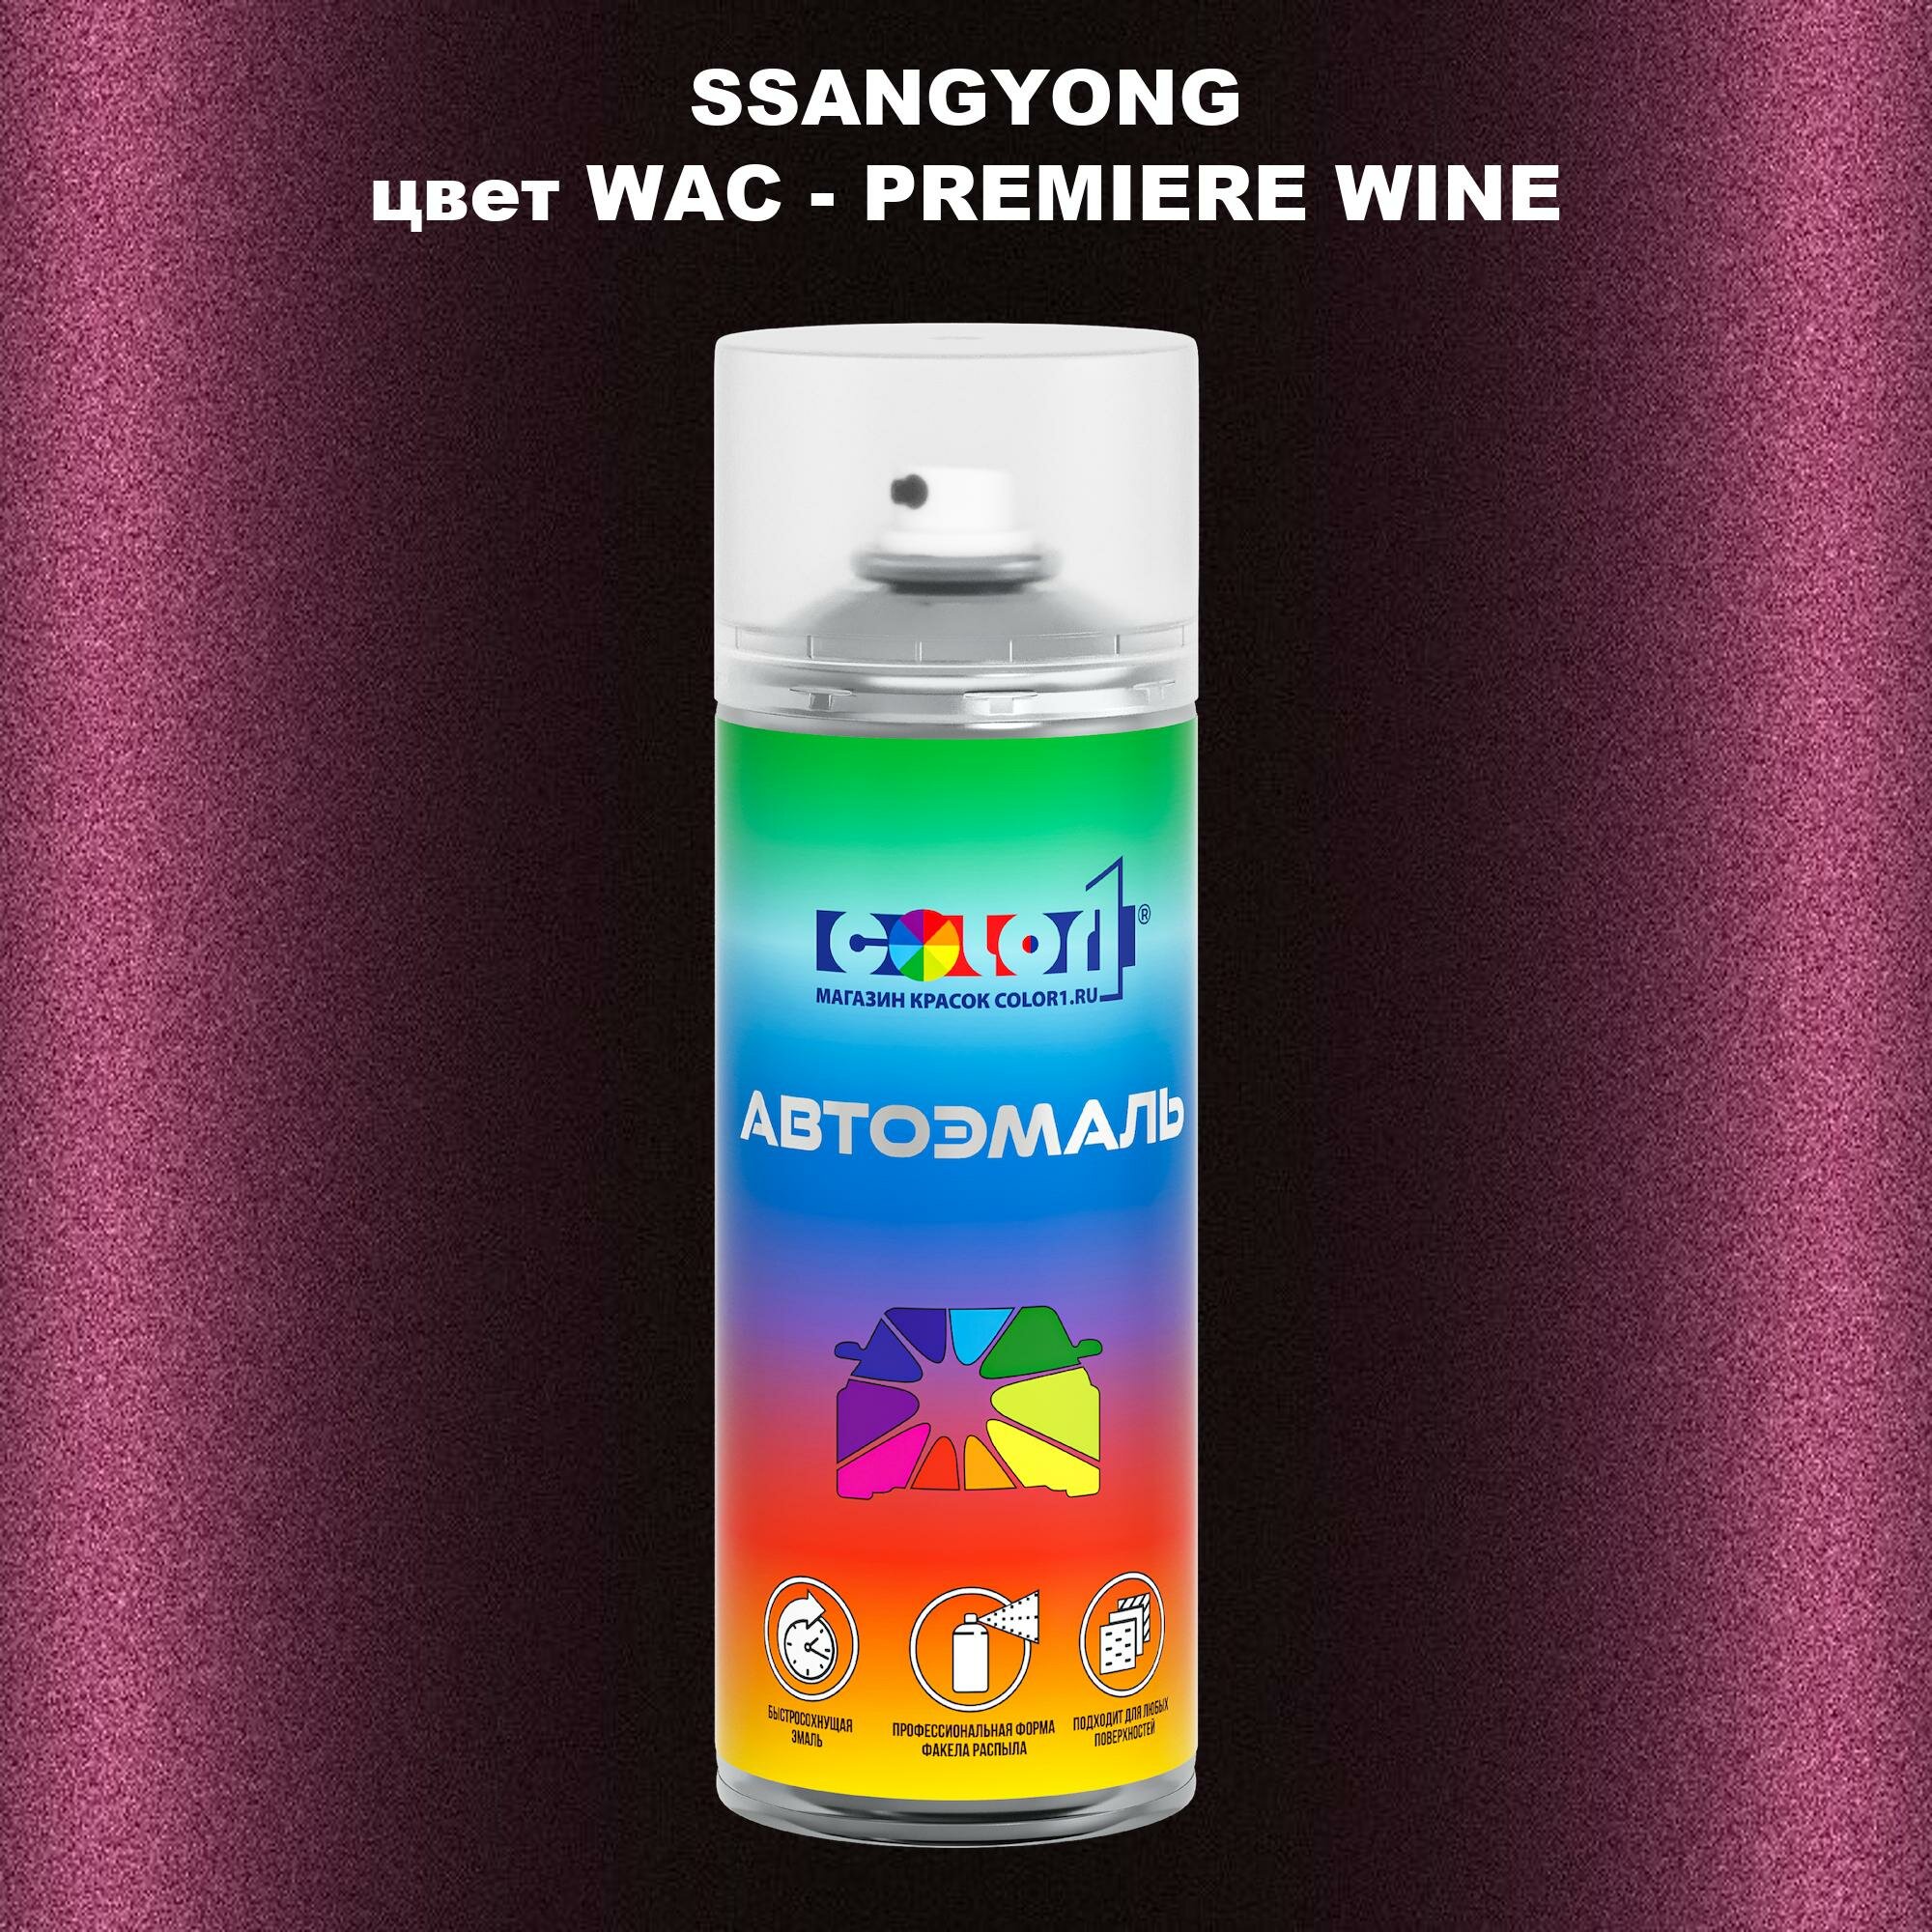 Аэрозольная краска COLOR1 для SSANGYONG, цвет WAC - PREMIERE WINE